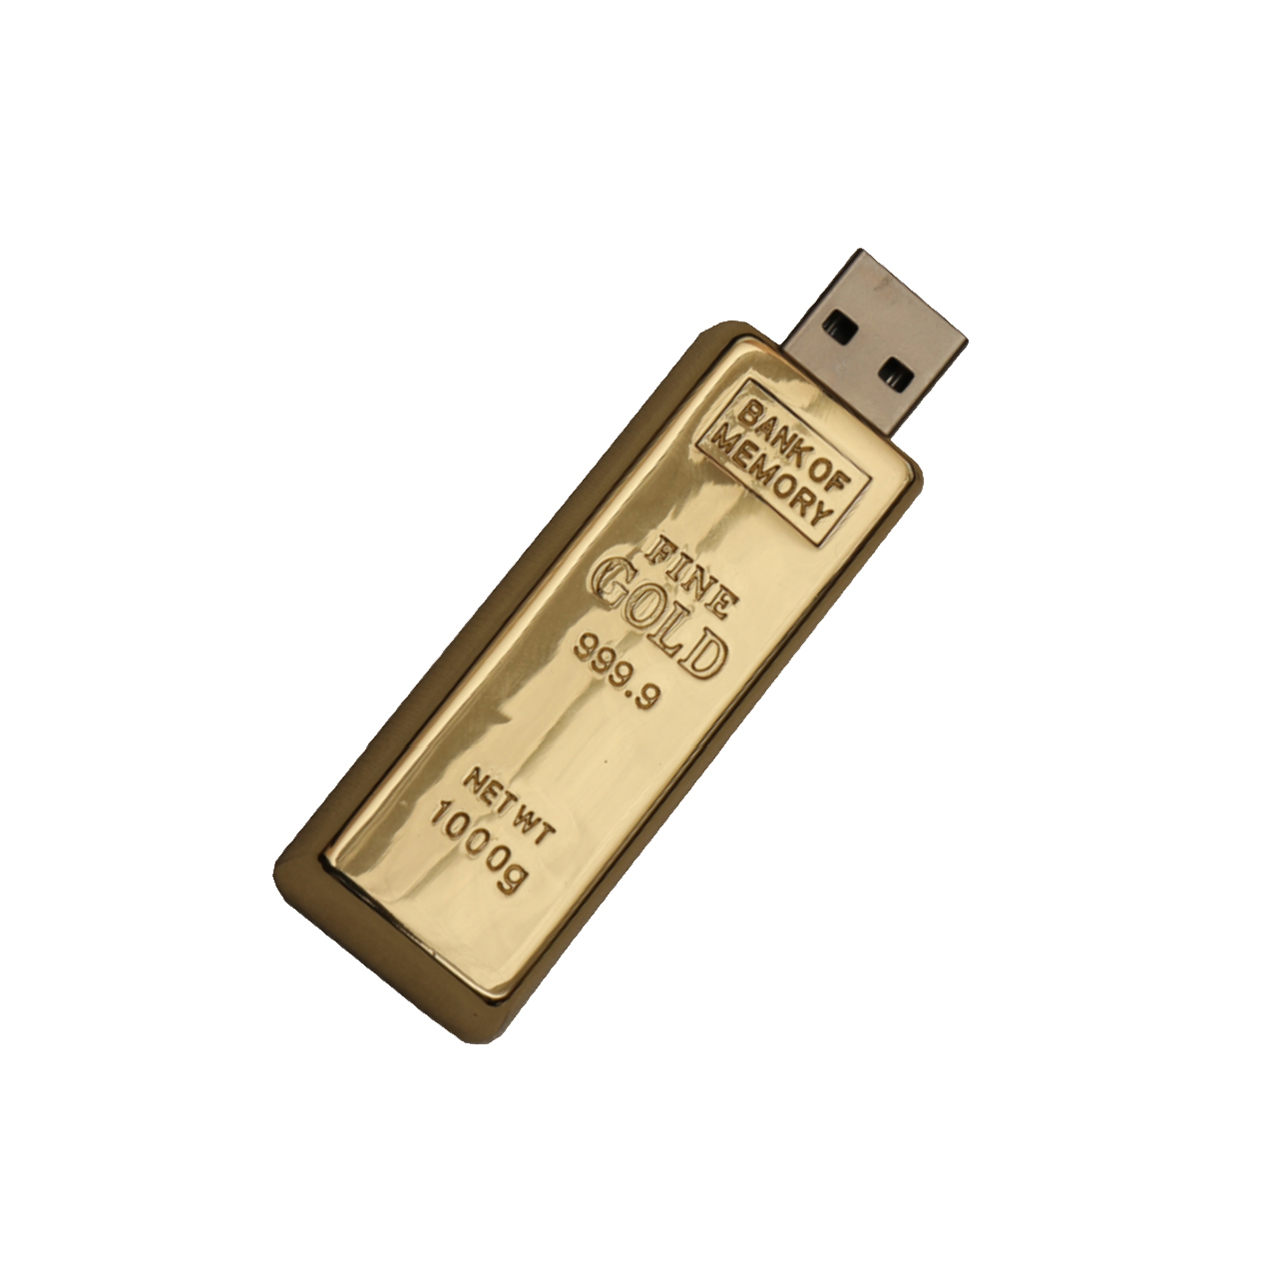 فلش مموری فلزی دایا دیتا طرح شمش طلا مدل ME1001-USB3 ظرفیت 32 گیگابایت